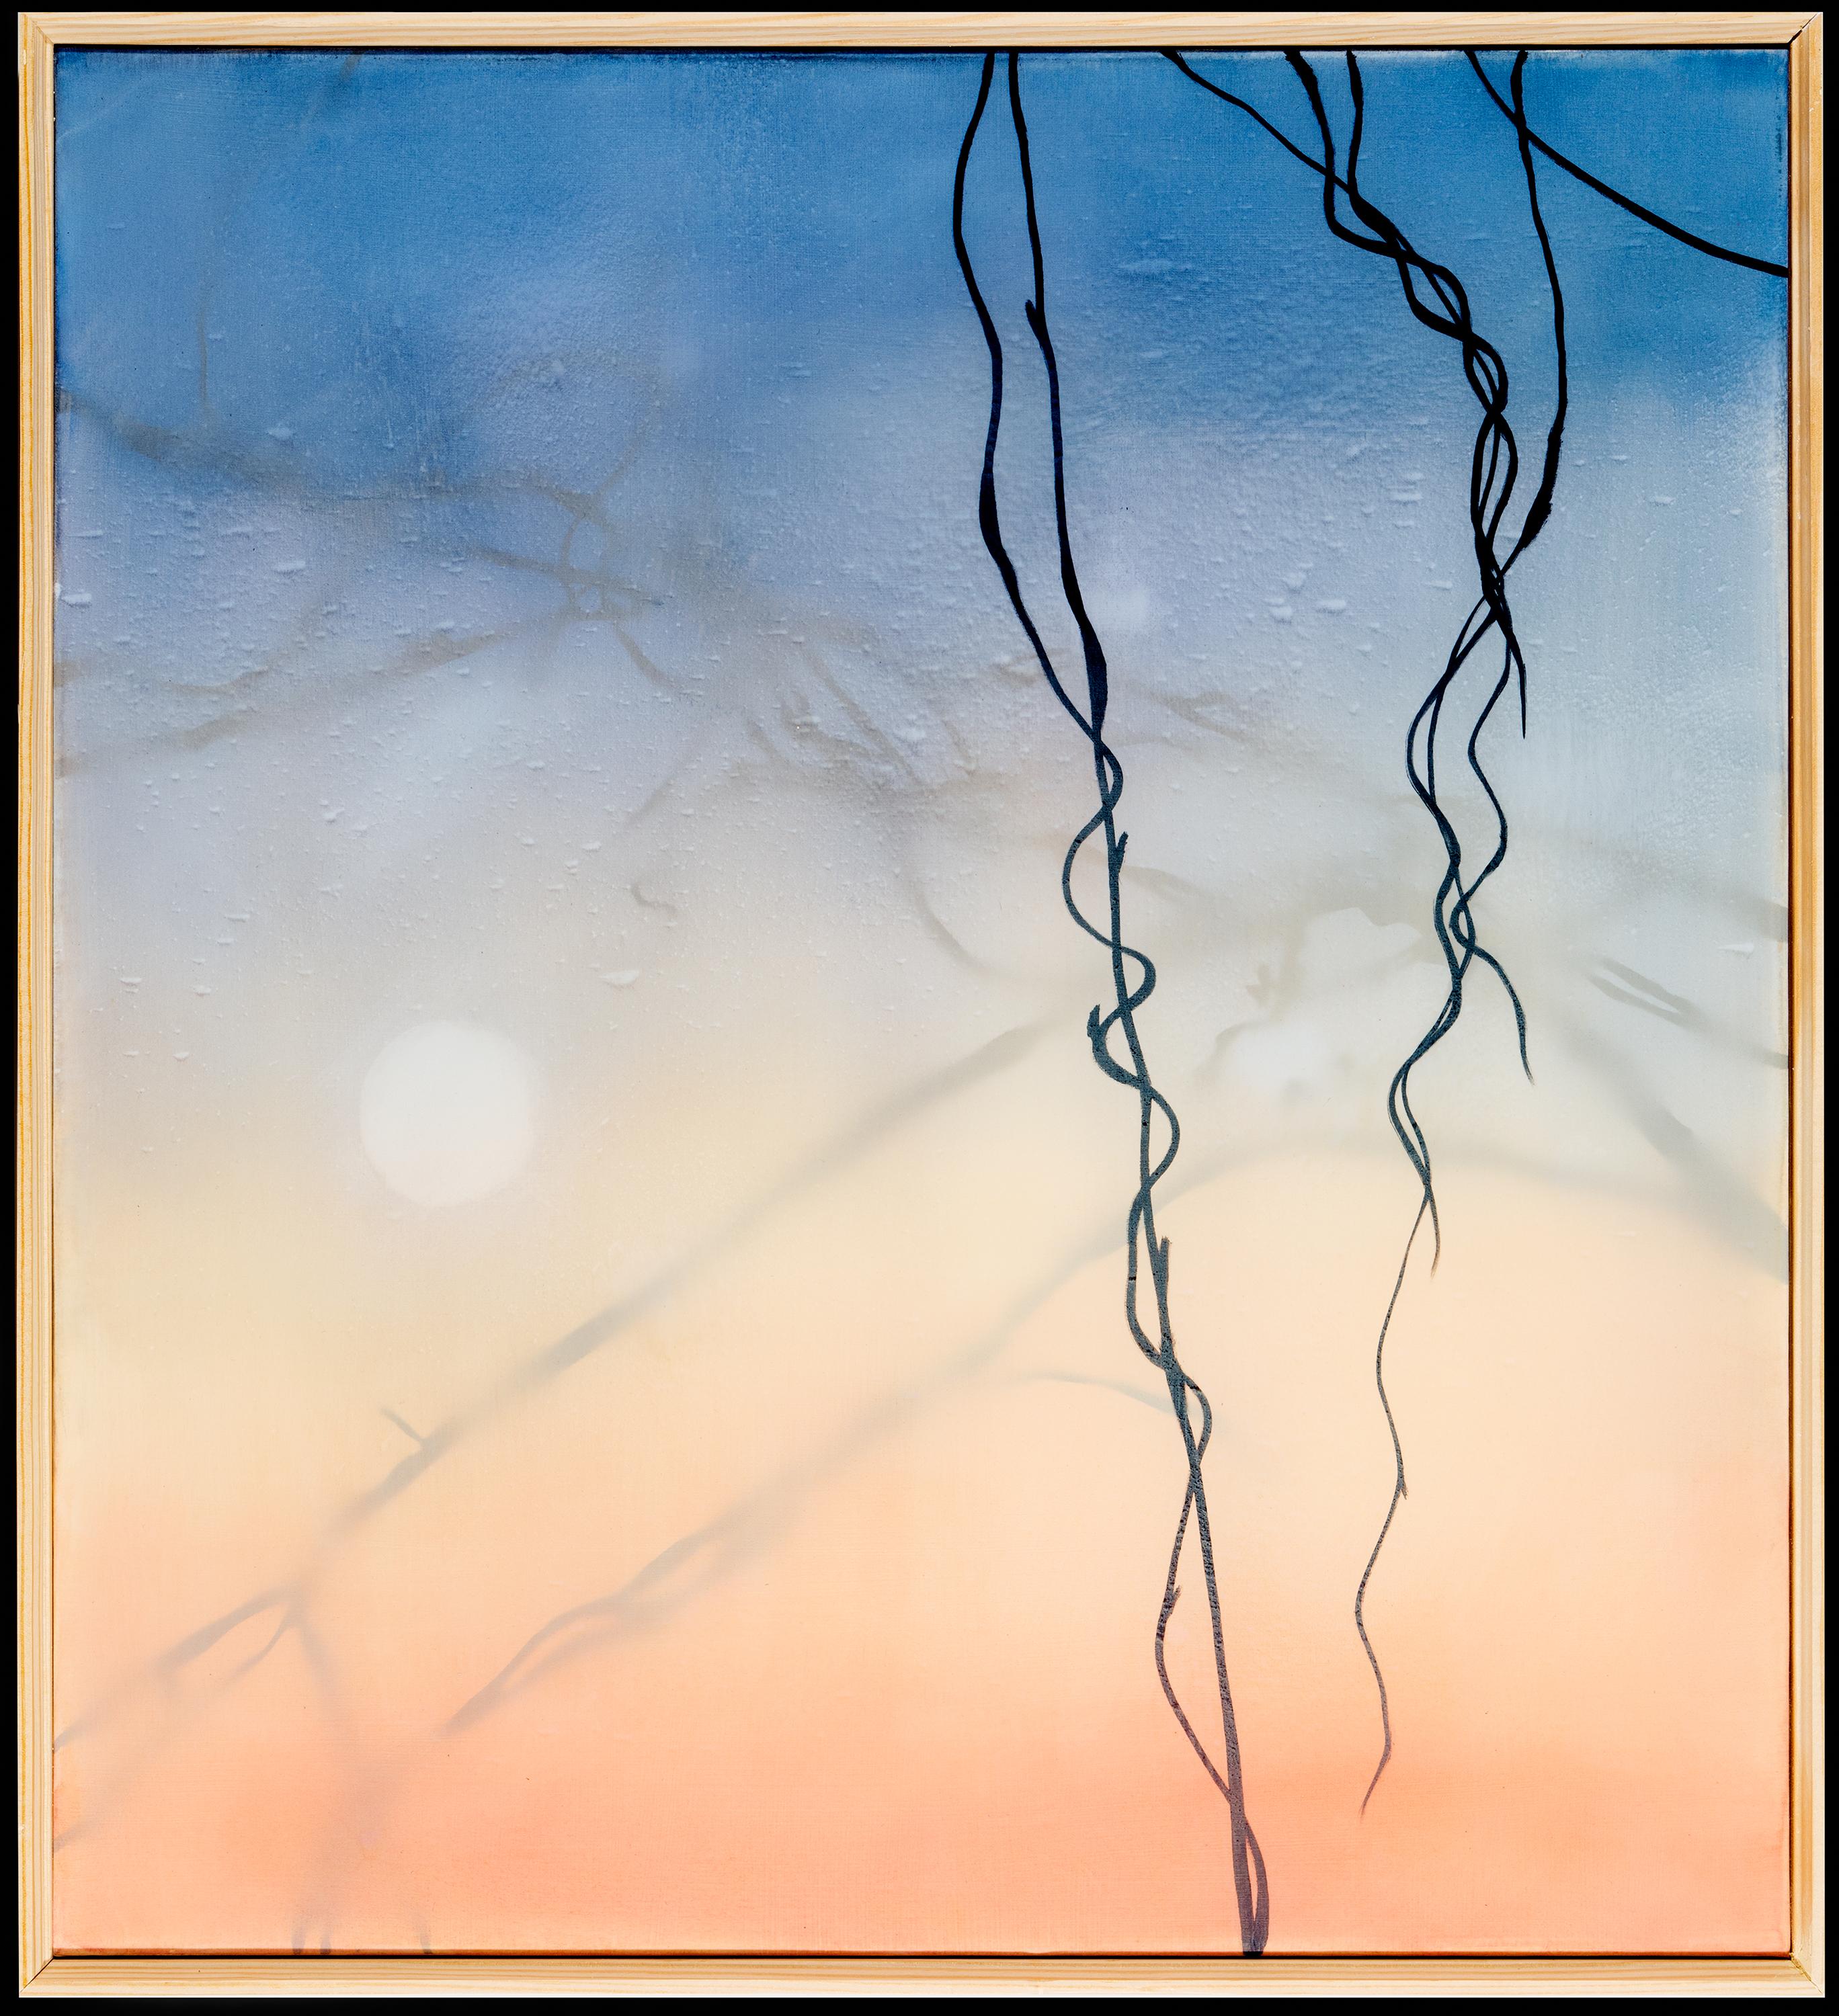 DORMANT - Peinture de vigne de Kudzu bleue, orange, noire et blanche, atmosphérique - Painting de Heather Hartman